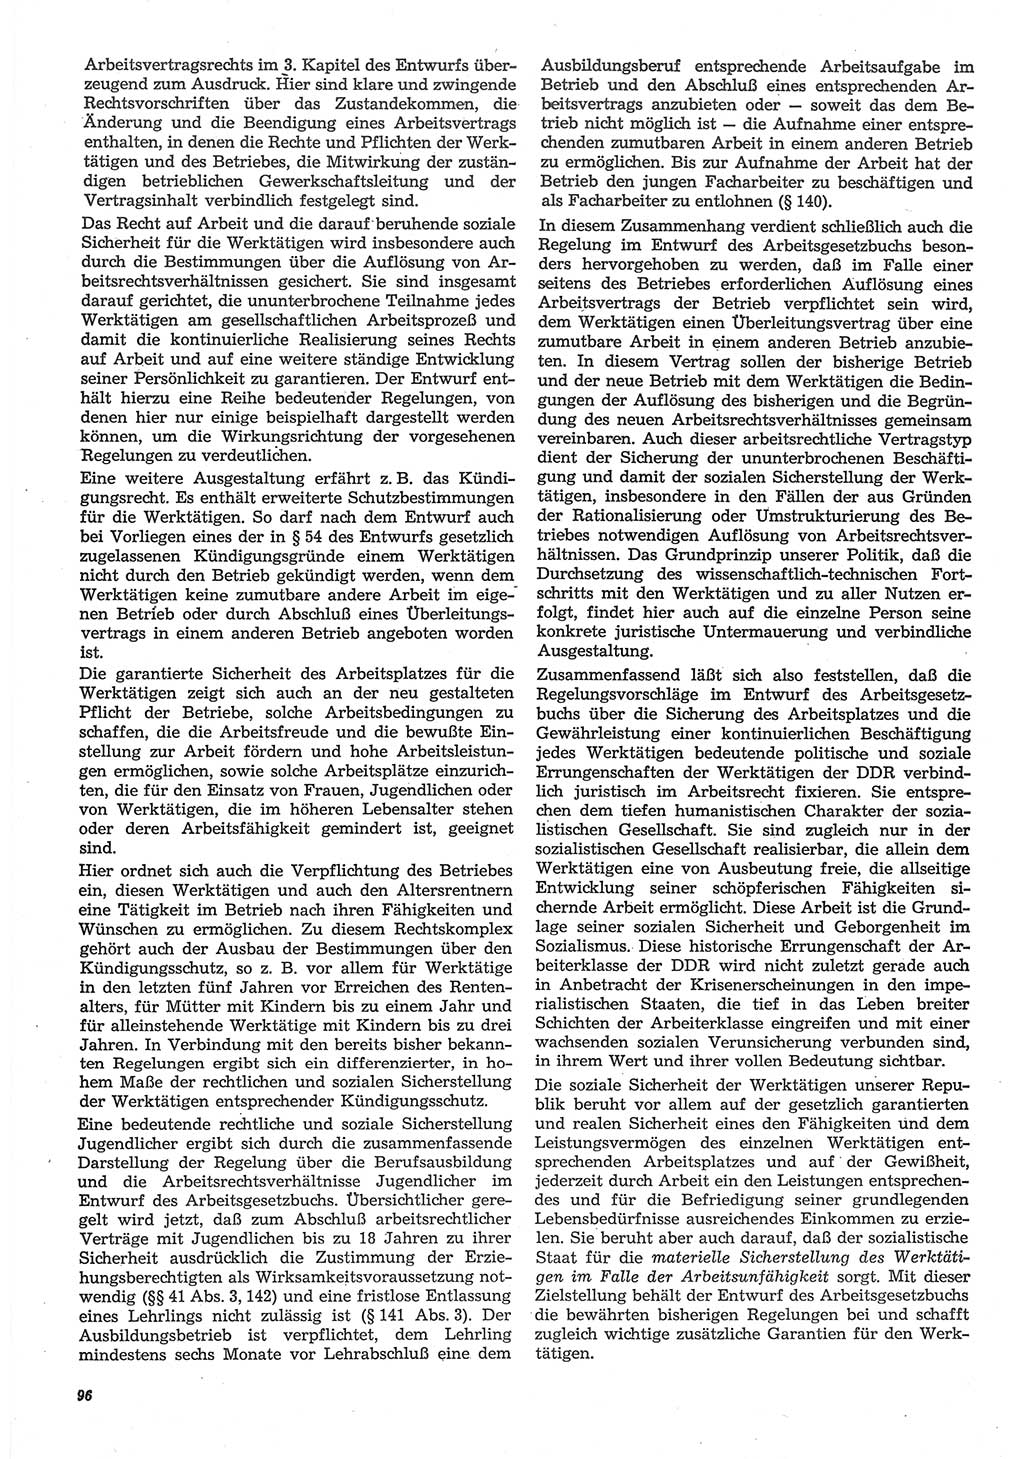 Neue Justiz (NJ), Zeitschrift für Recht und Rechtswissenschaft-Zeitschrift, sozialistisches Recht und Gesetzlichkeit, 31. Jahrgang 1977, Seite 96 (NJ DDR 1977, S. 96)